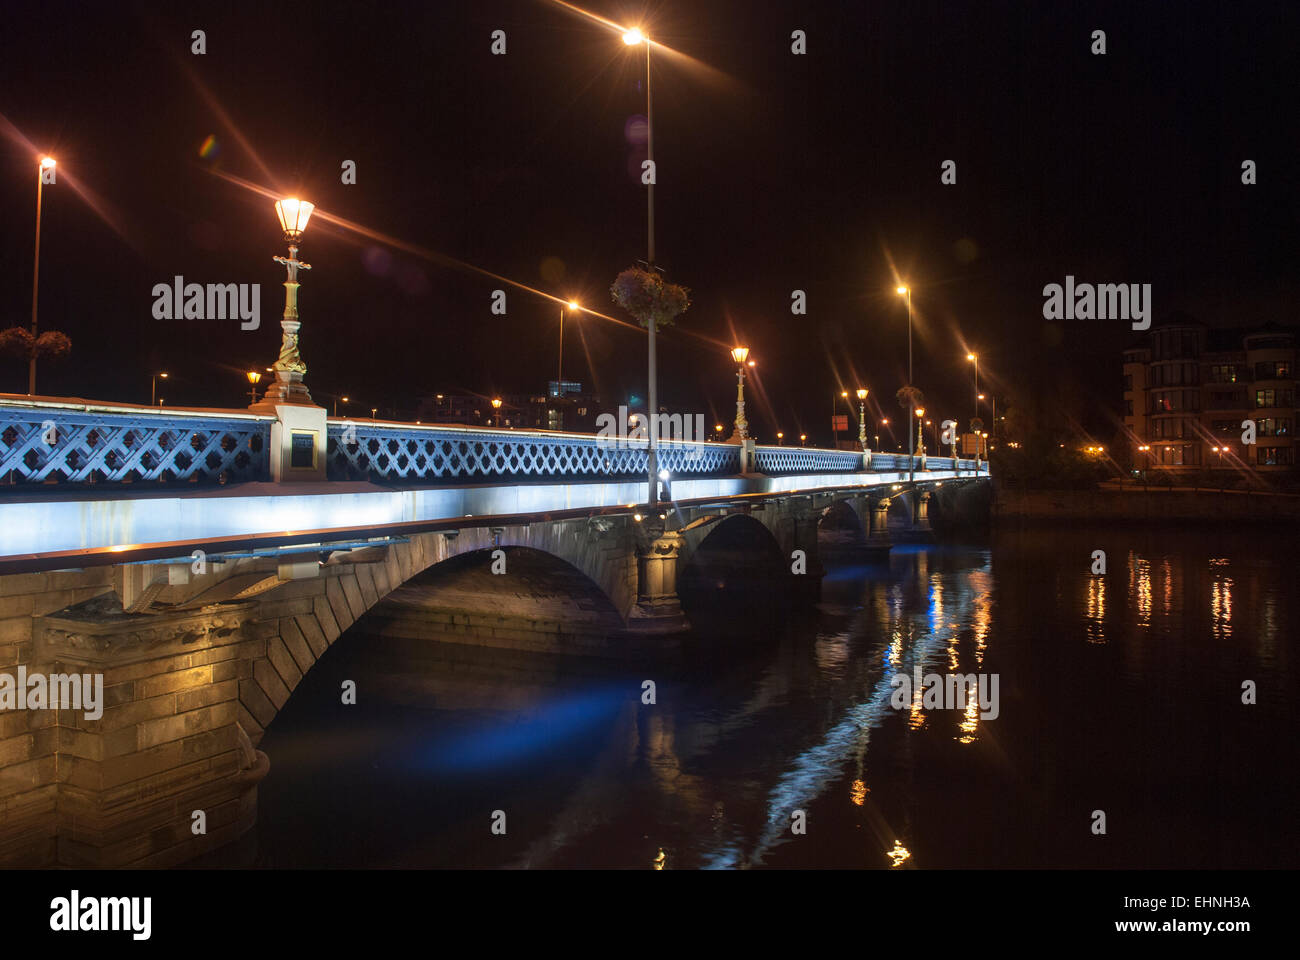 Queen's Bridge, Belfast at night Stock Photo